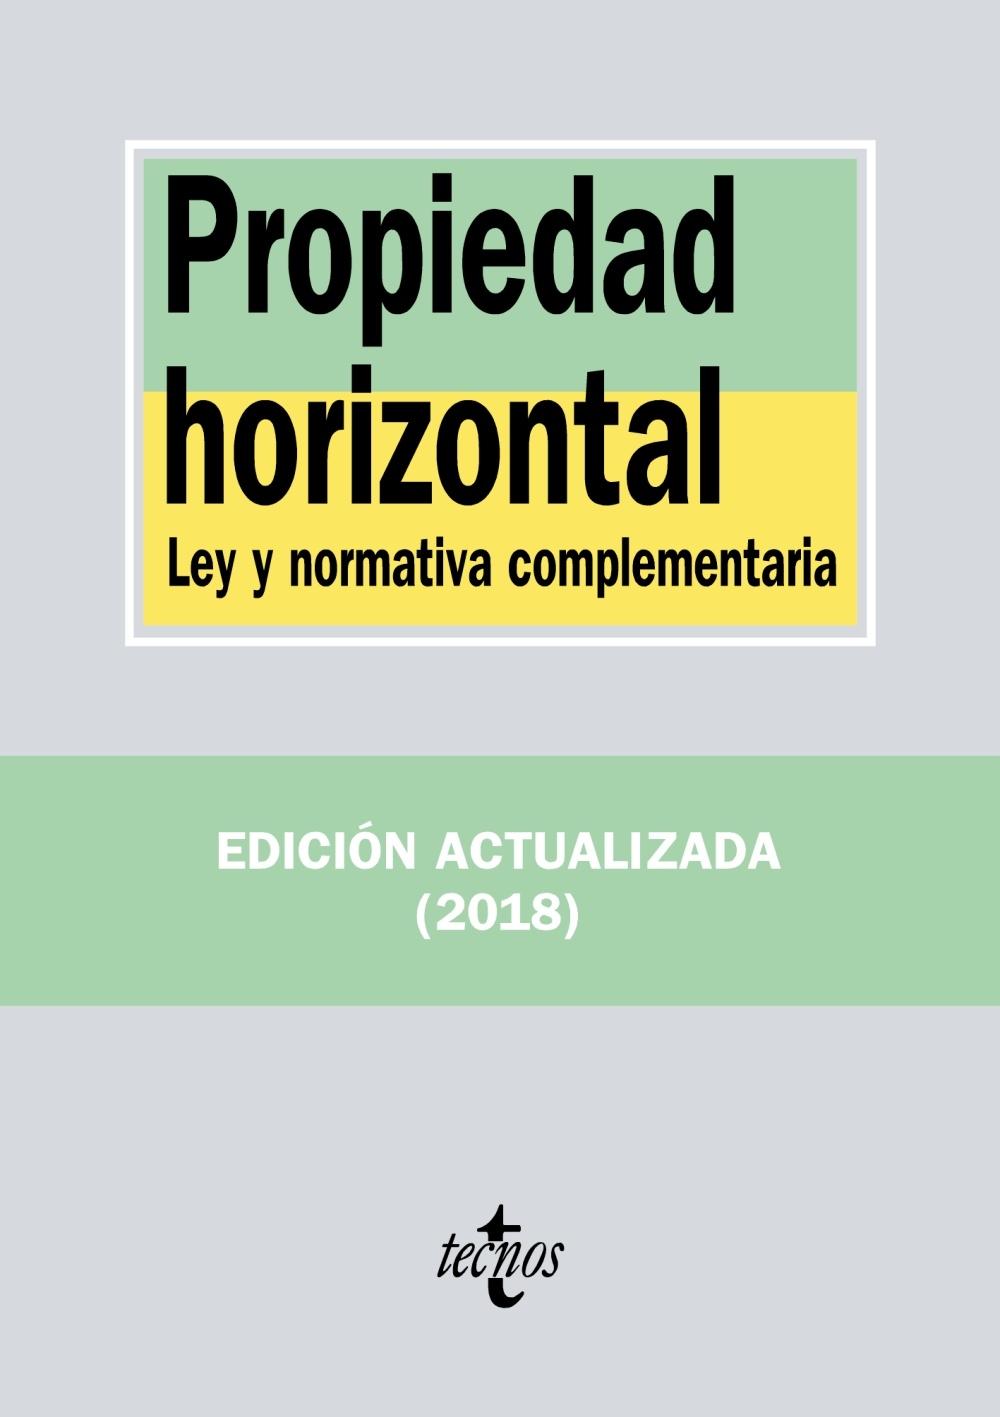 PROPIEDAD HORIZONTAL "LEY Y NORMATIVA COMPLEMENTARIA"